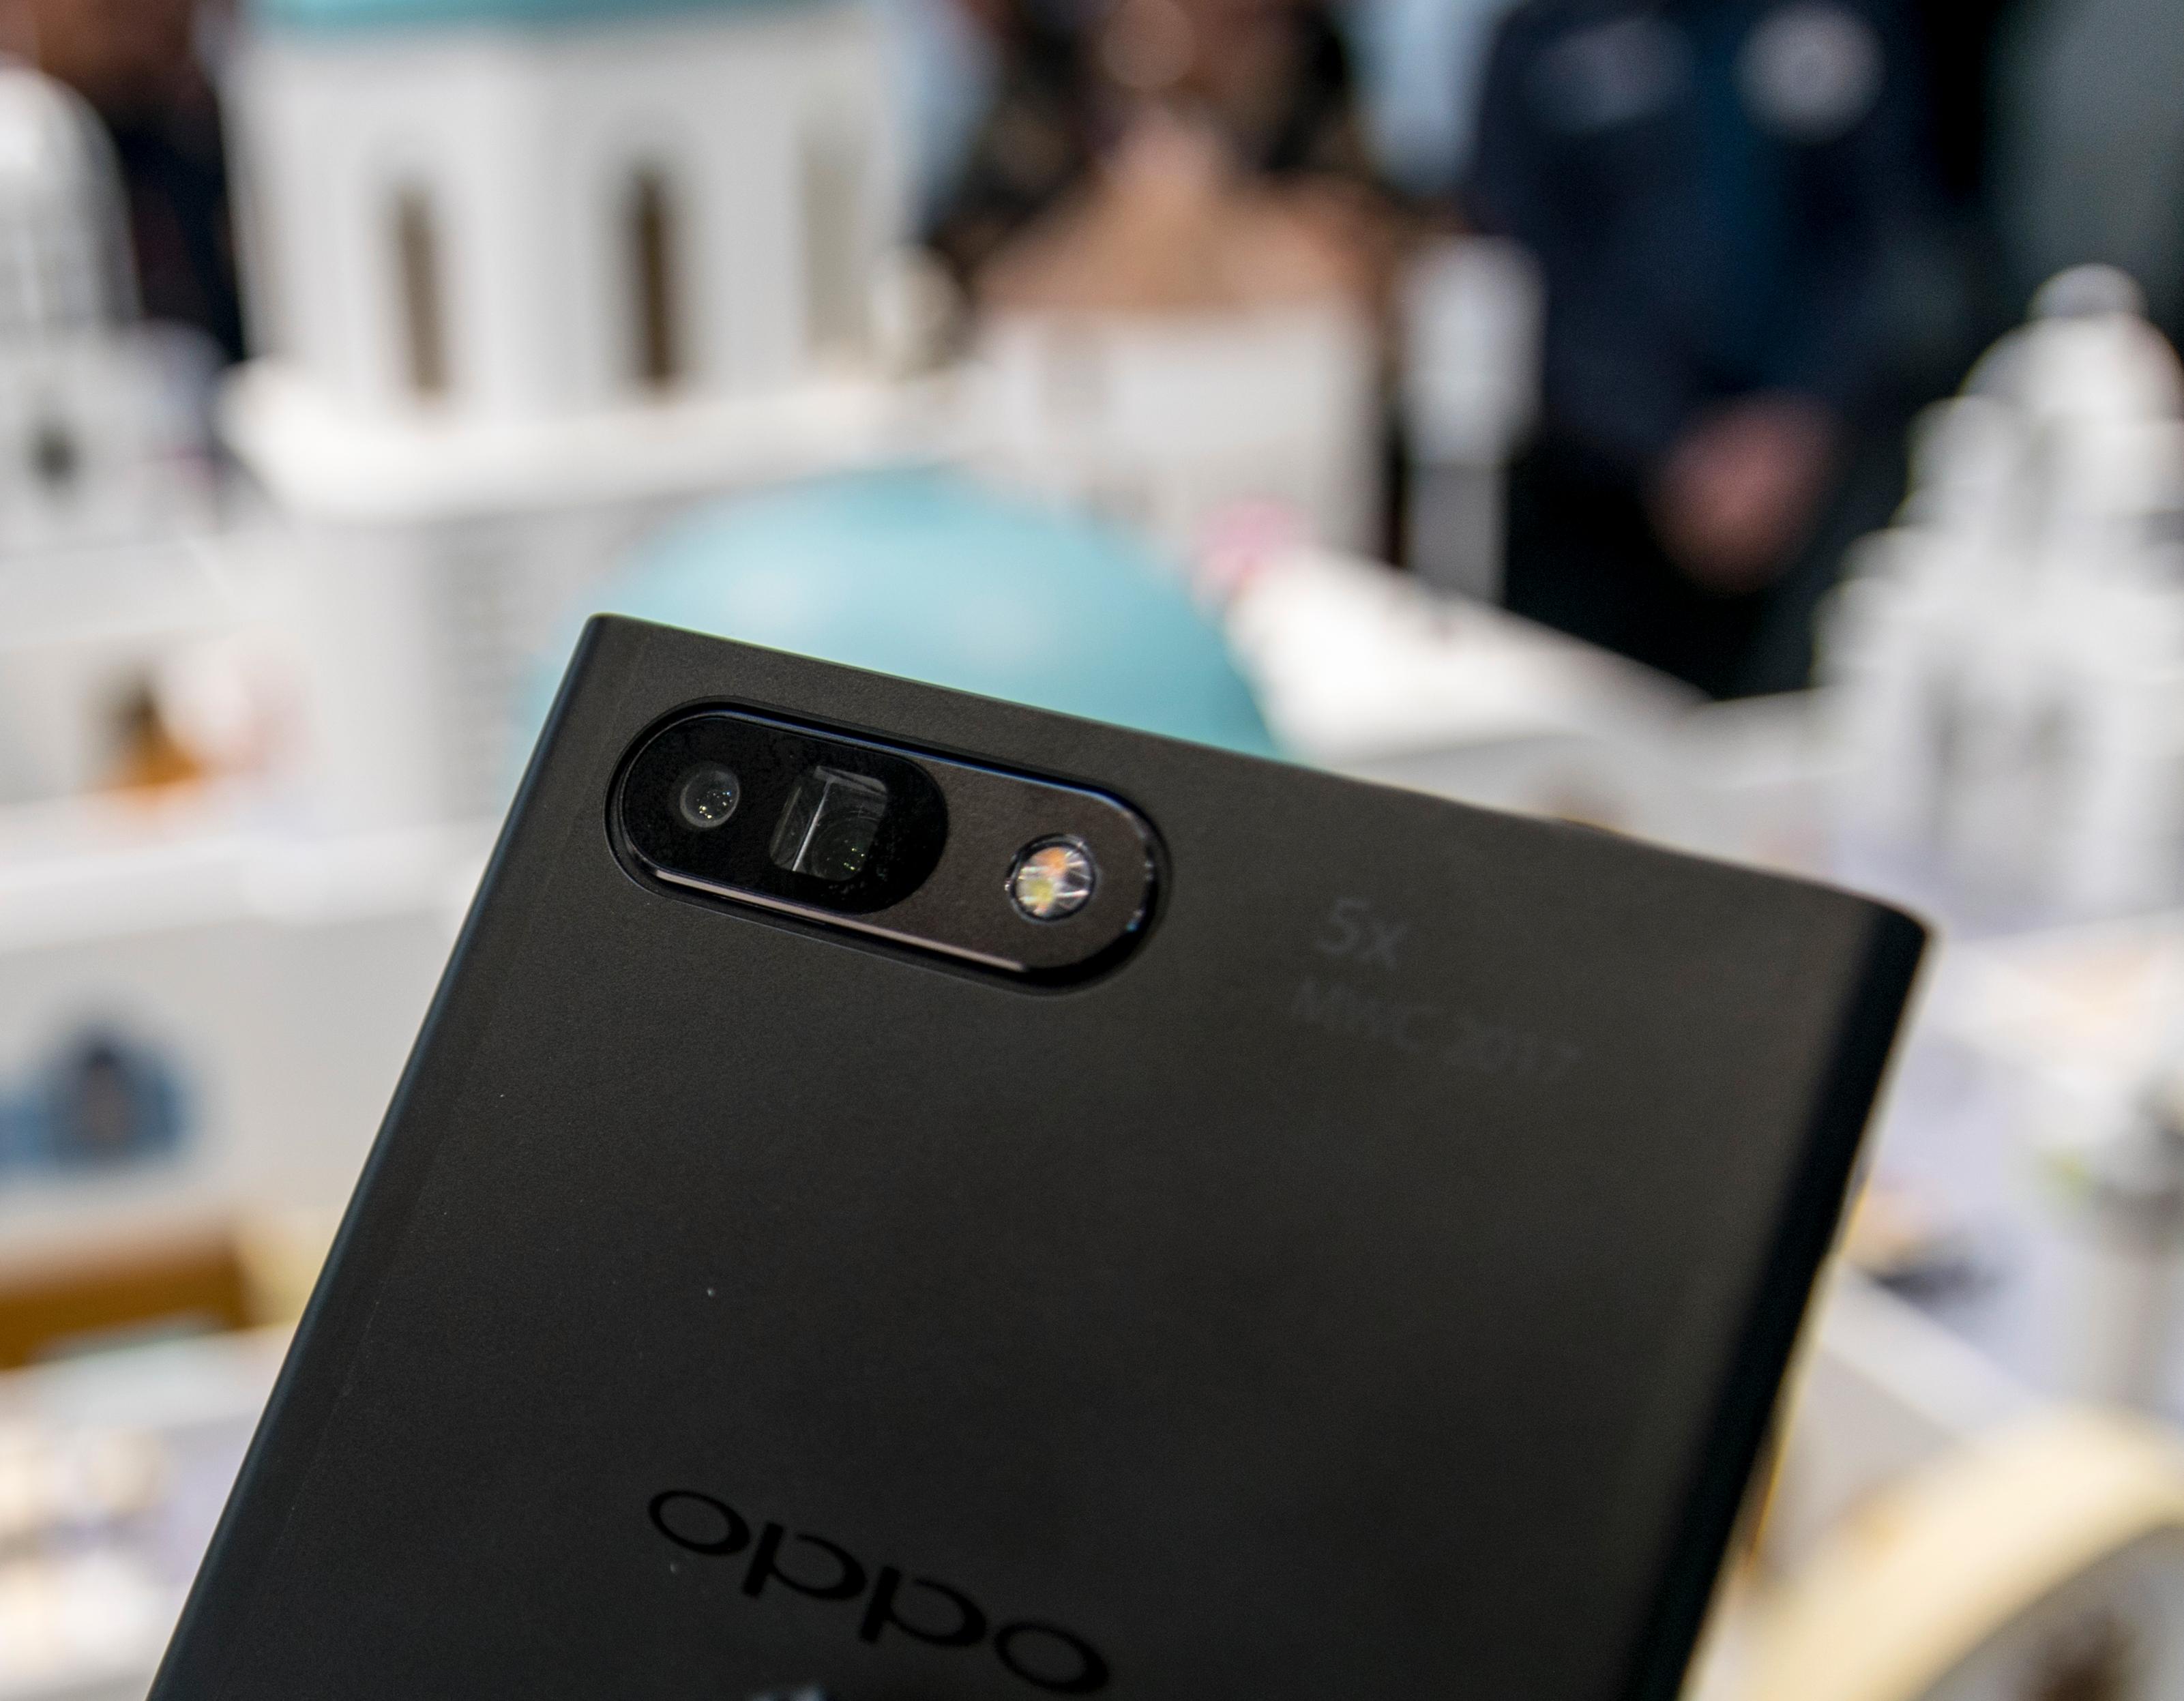 For to år siden viste Oppo frem samme type zoomkonsept som Huawei har lagt til i P30 Pro. Men den gang bare med 3x zoom eller 5x hybridzoom. Det klarer Huawei uten periskop i dag.